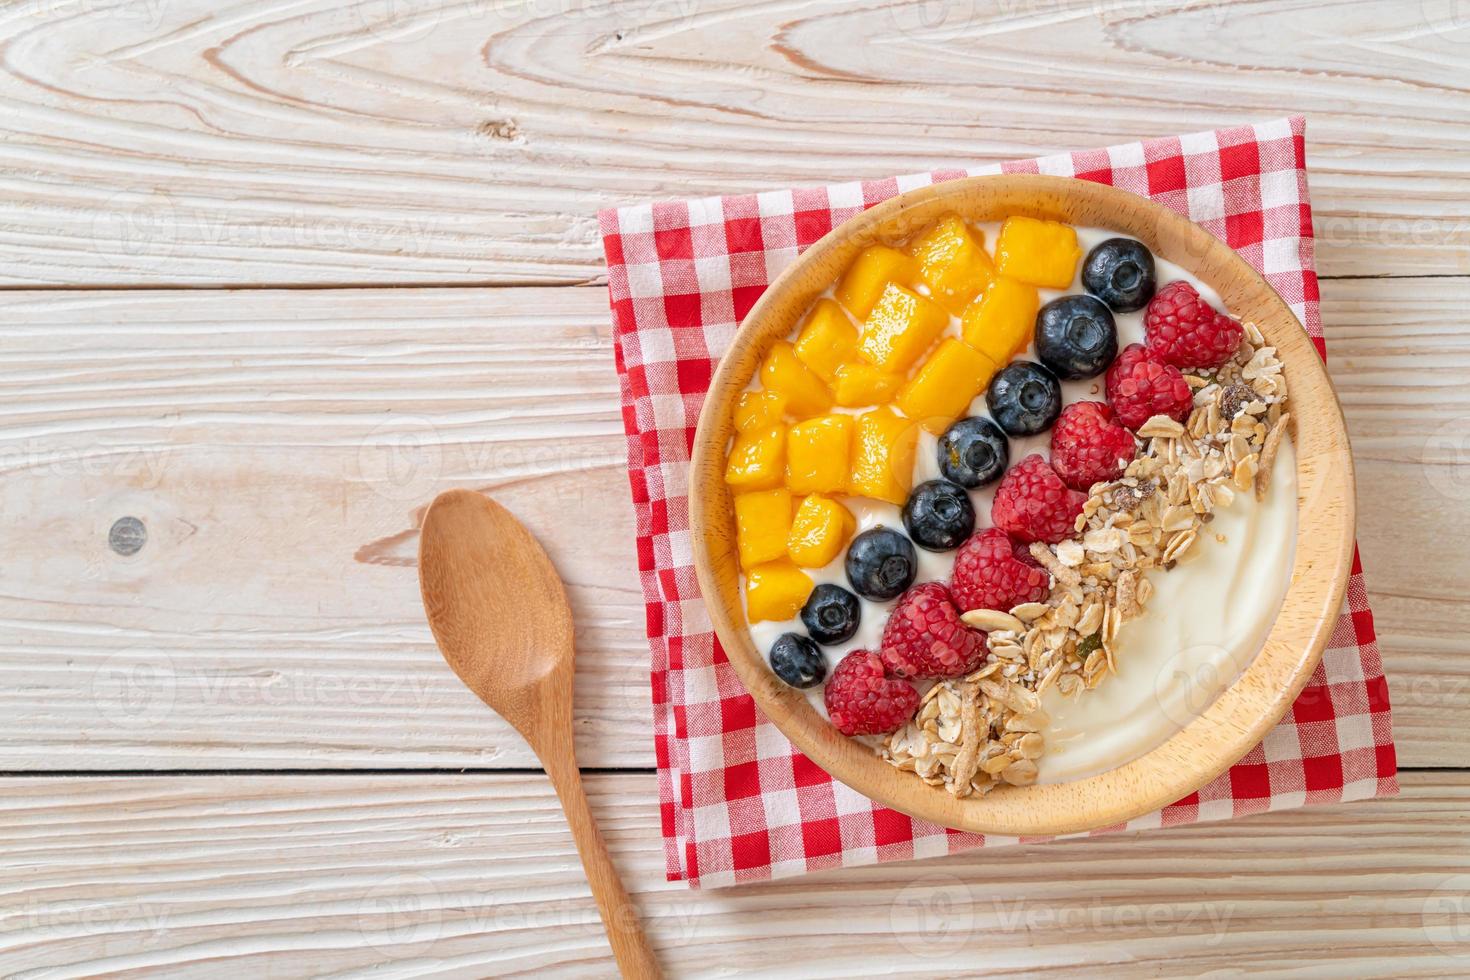 hausgemachte Joghurt-Bowl mit Himbeere, Heidelbeere, Mango und Müsli - gesunder Food-Style foto